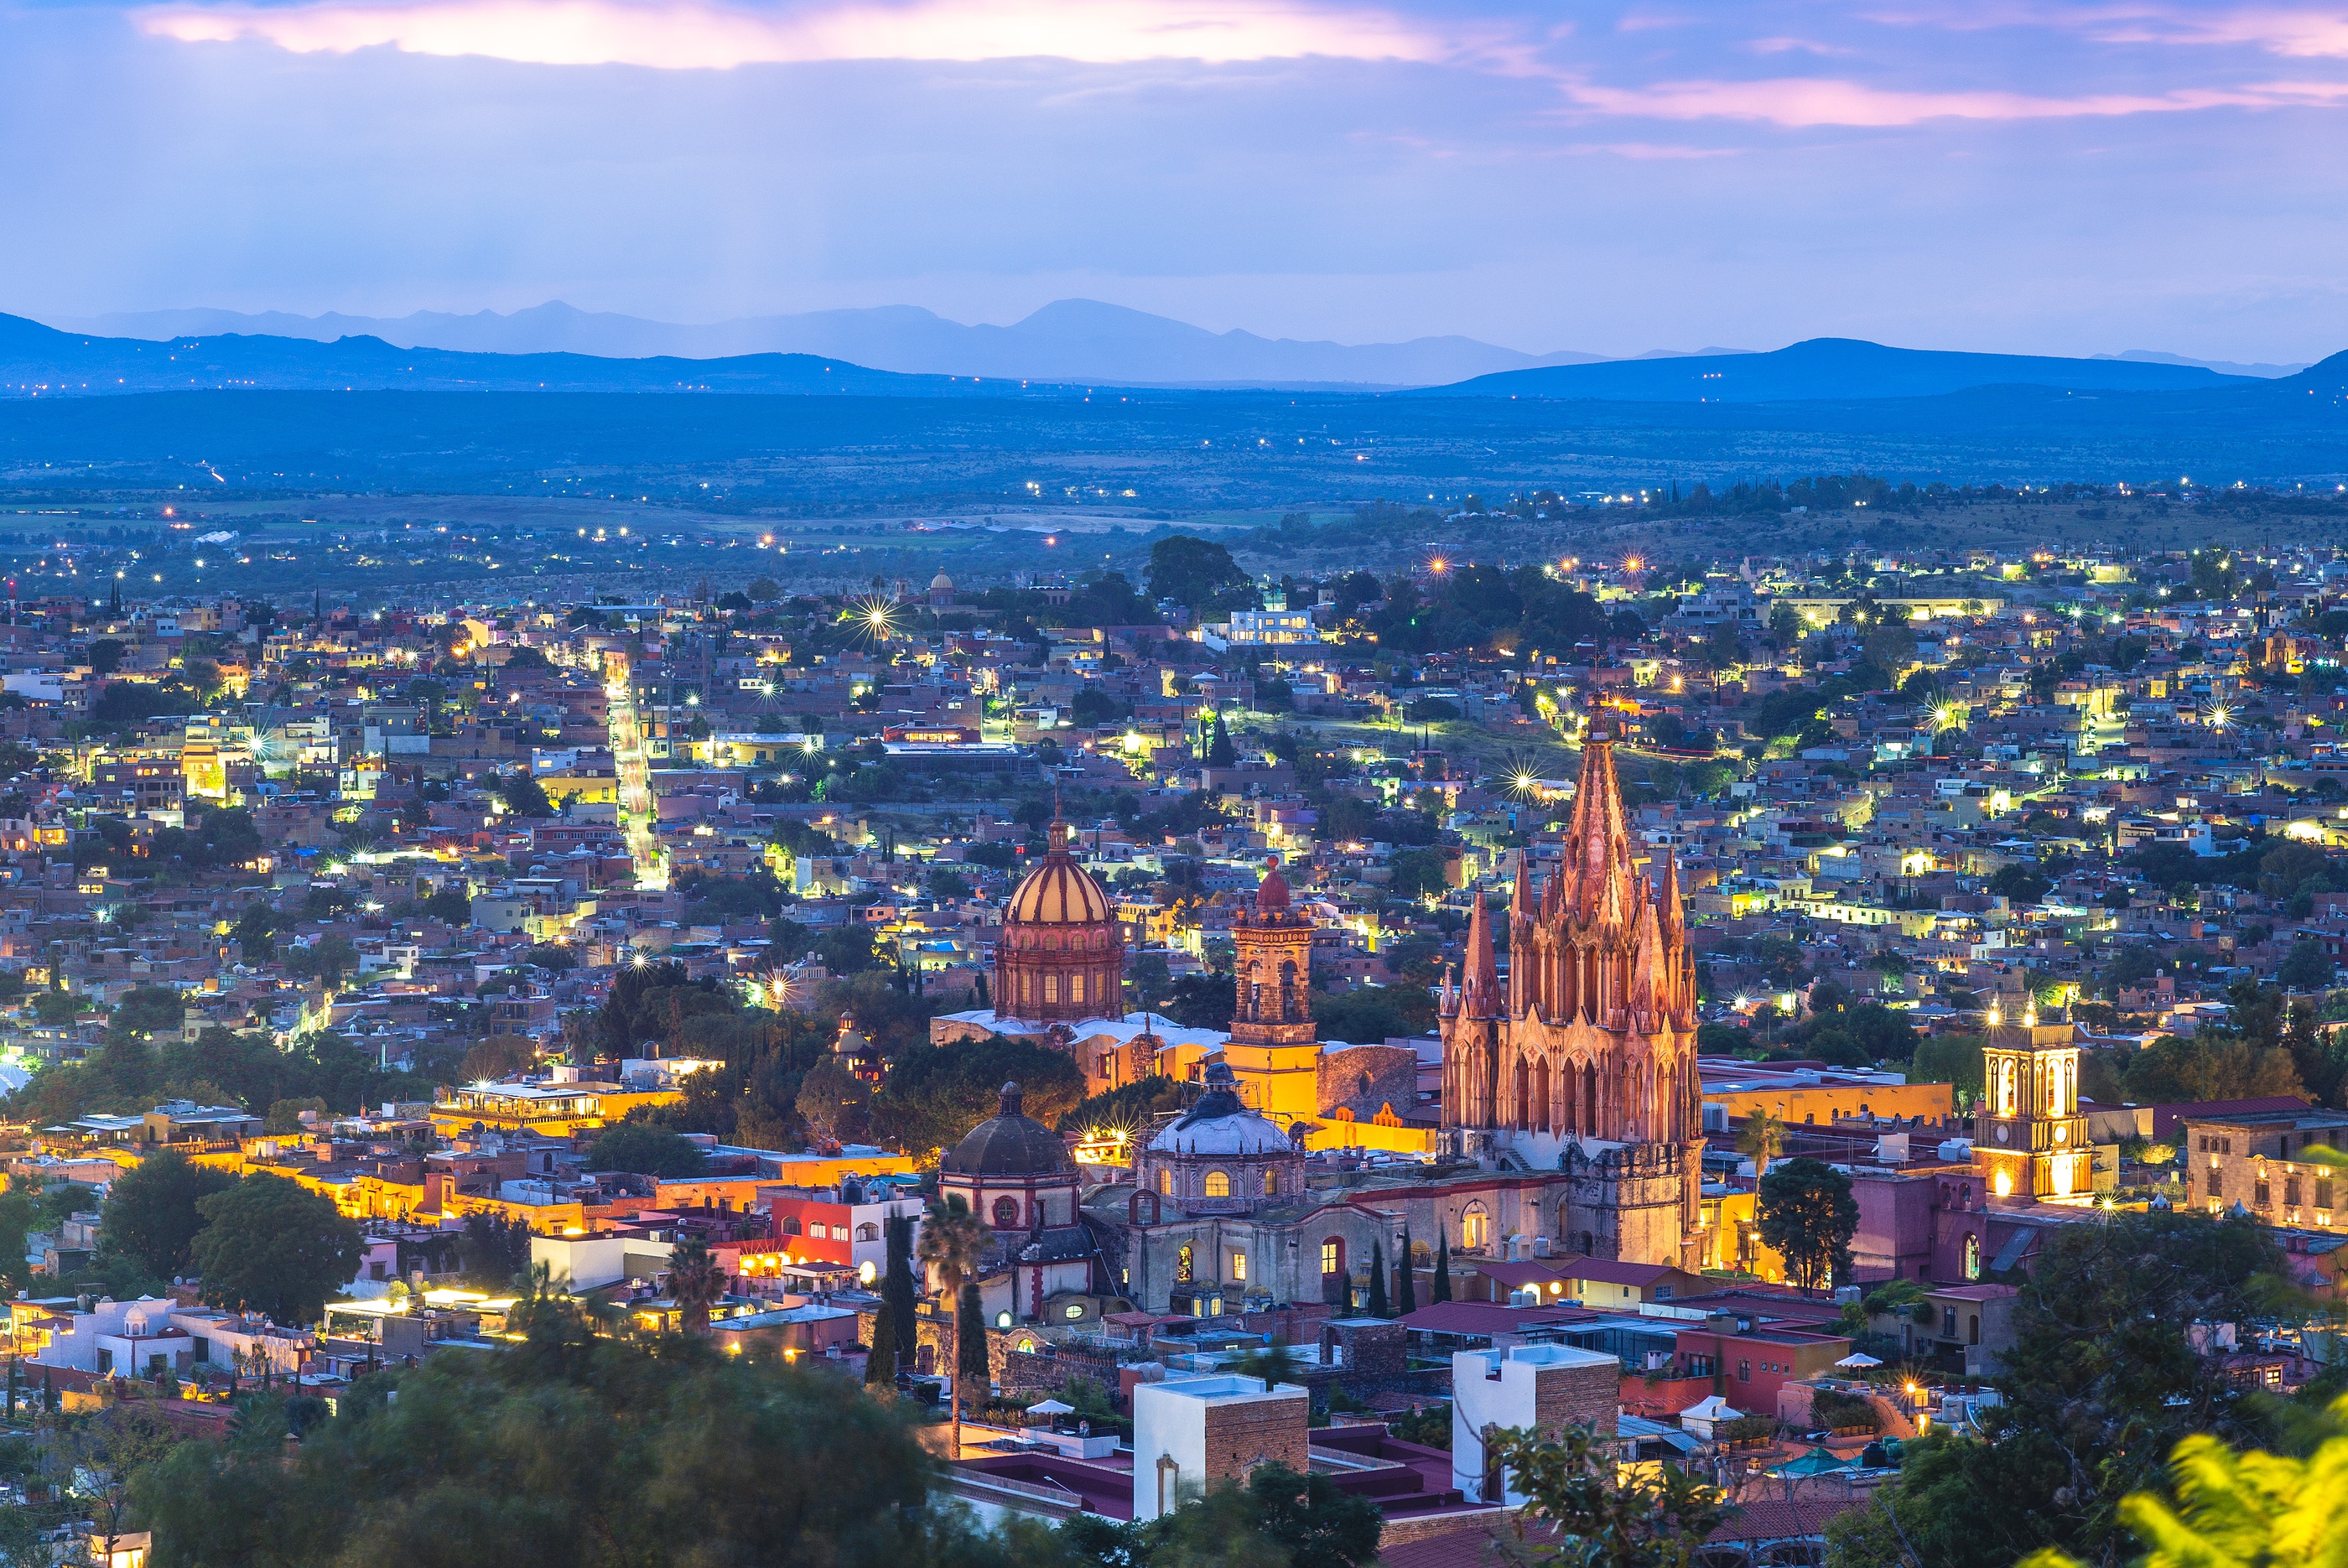 Scenery Of San Miguel De Allende In Mexico